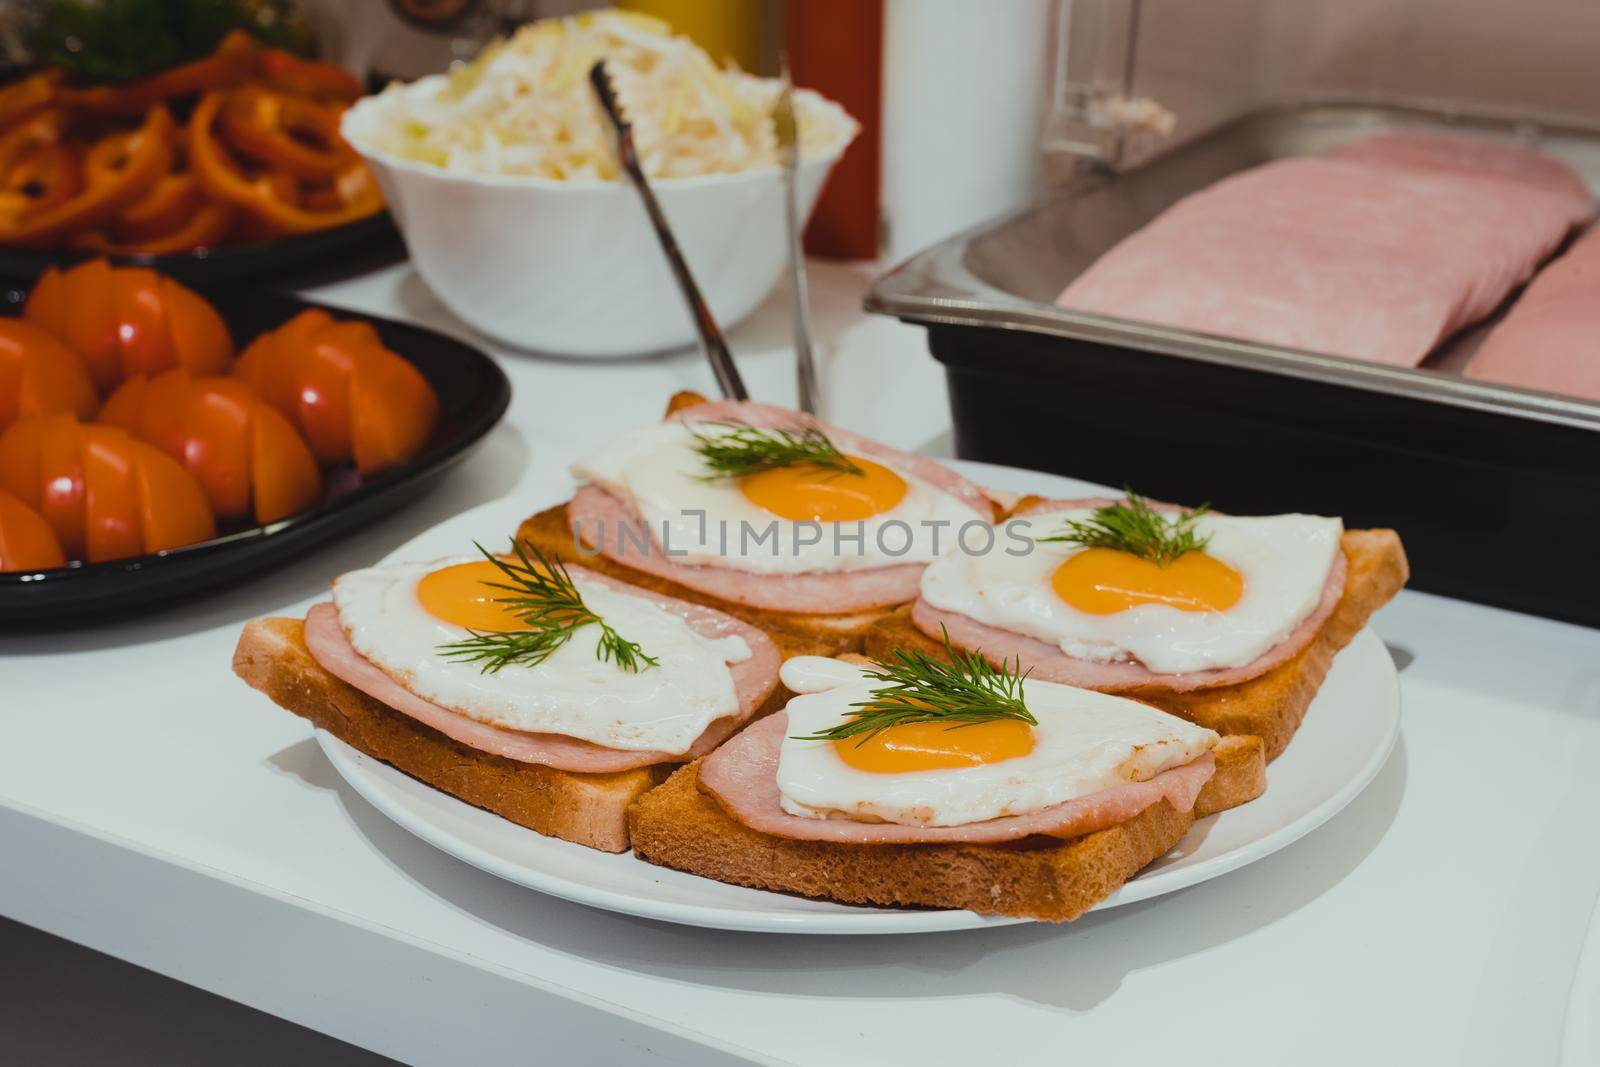 Hotel breakfast with eggs sandwich by Ilianesolenyi